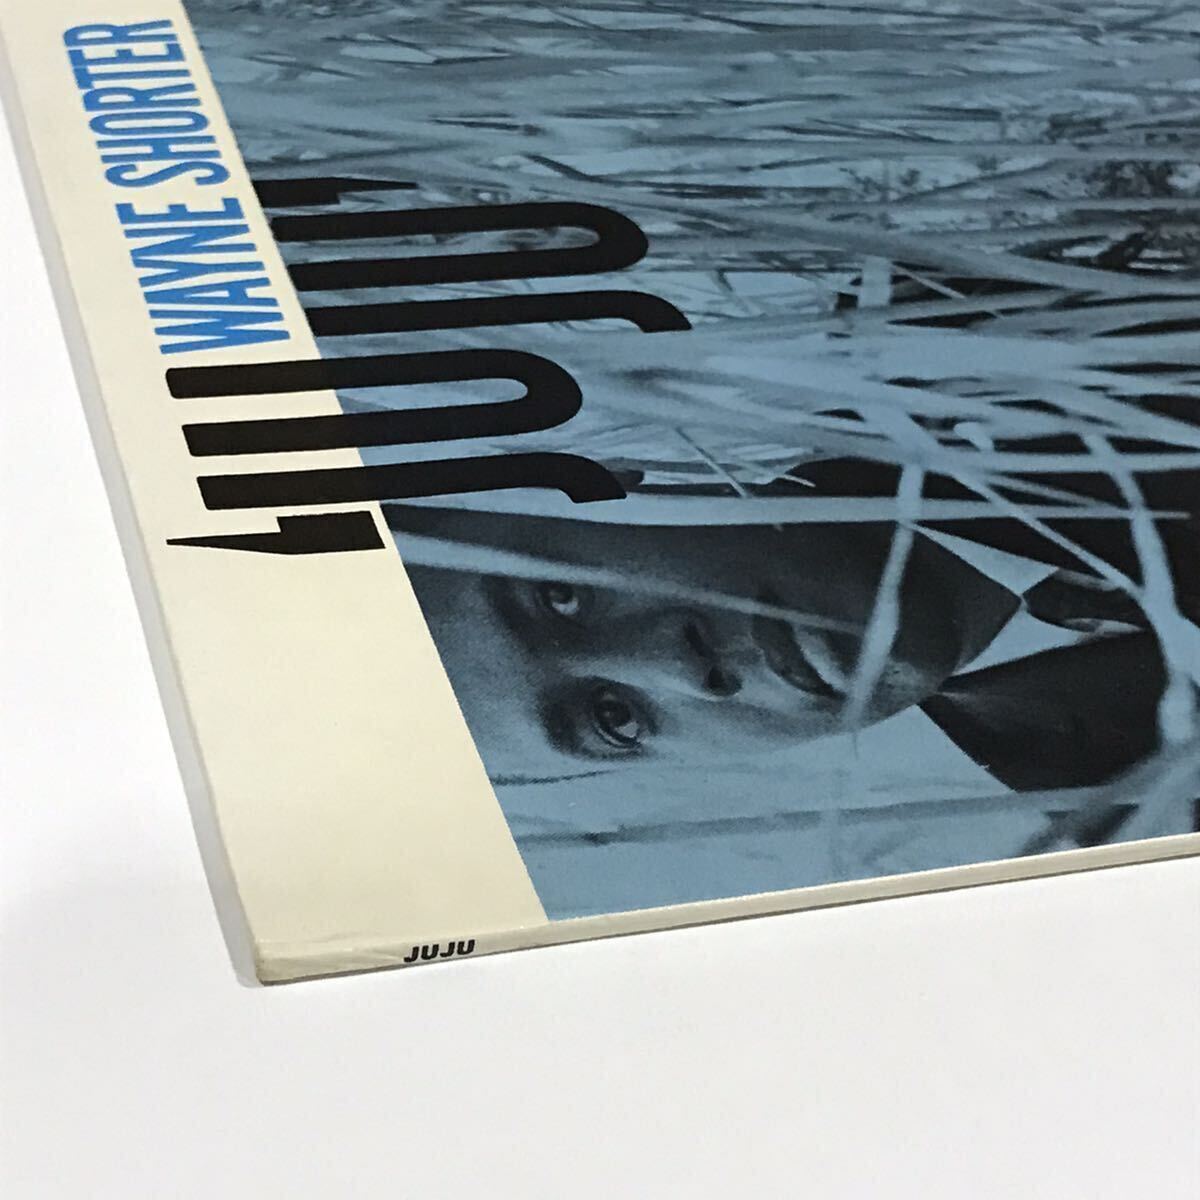 VAN GELDER刻印入りUS盤LIBERTYラベル WAYNE SHORTER / JUJU on BLUE NOTE RECORDS McCOY TYNER REGINALD WORKMAN ELVIN JONES_画像3